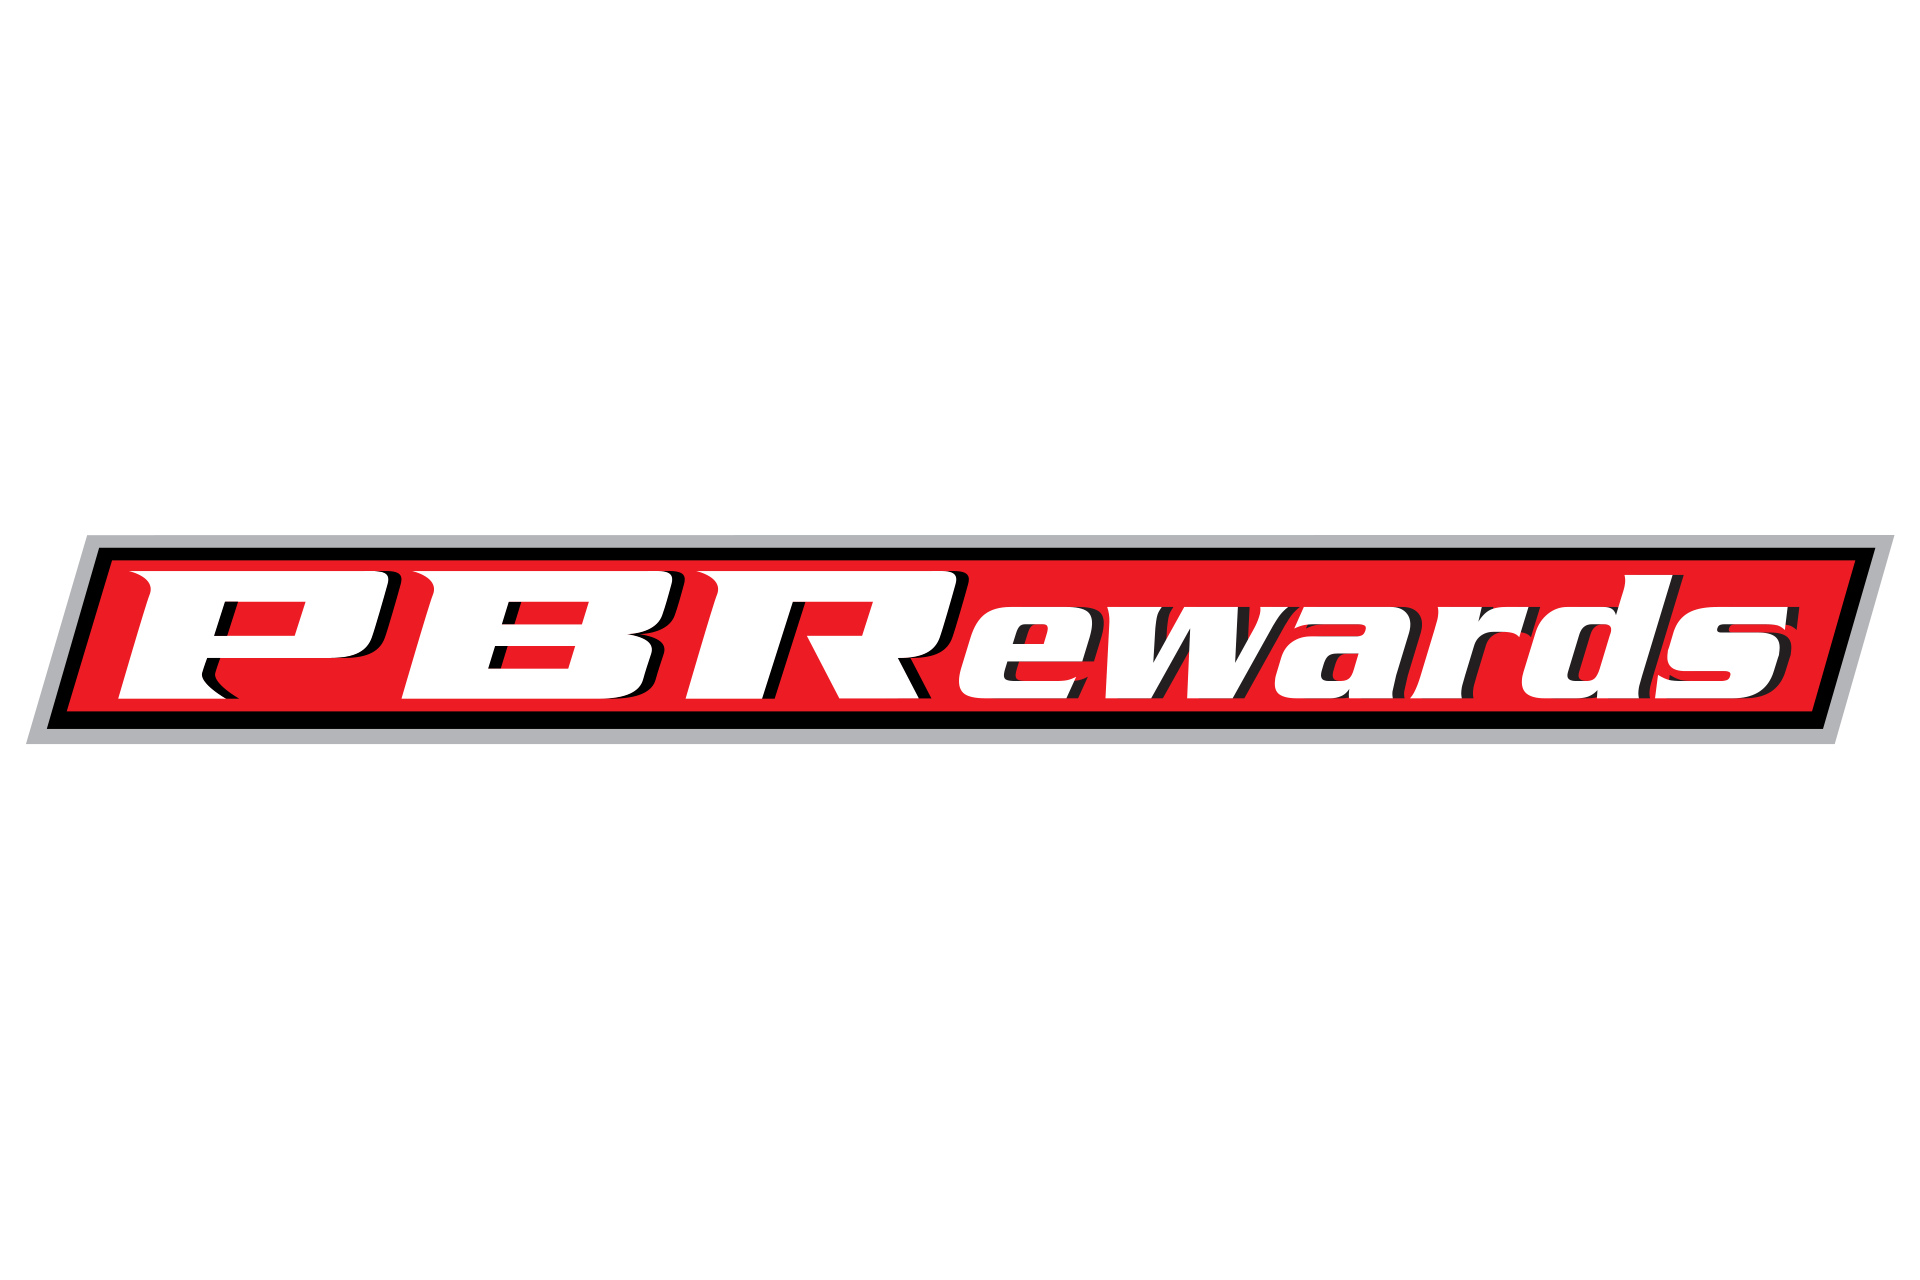 PBR Rewards Fan Info